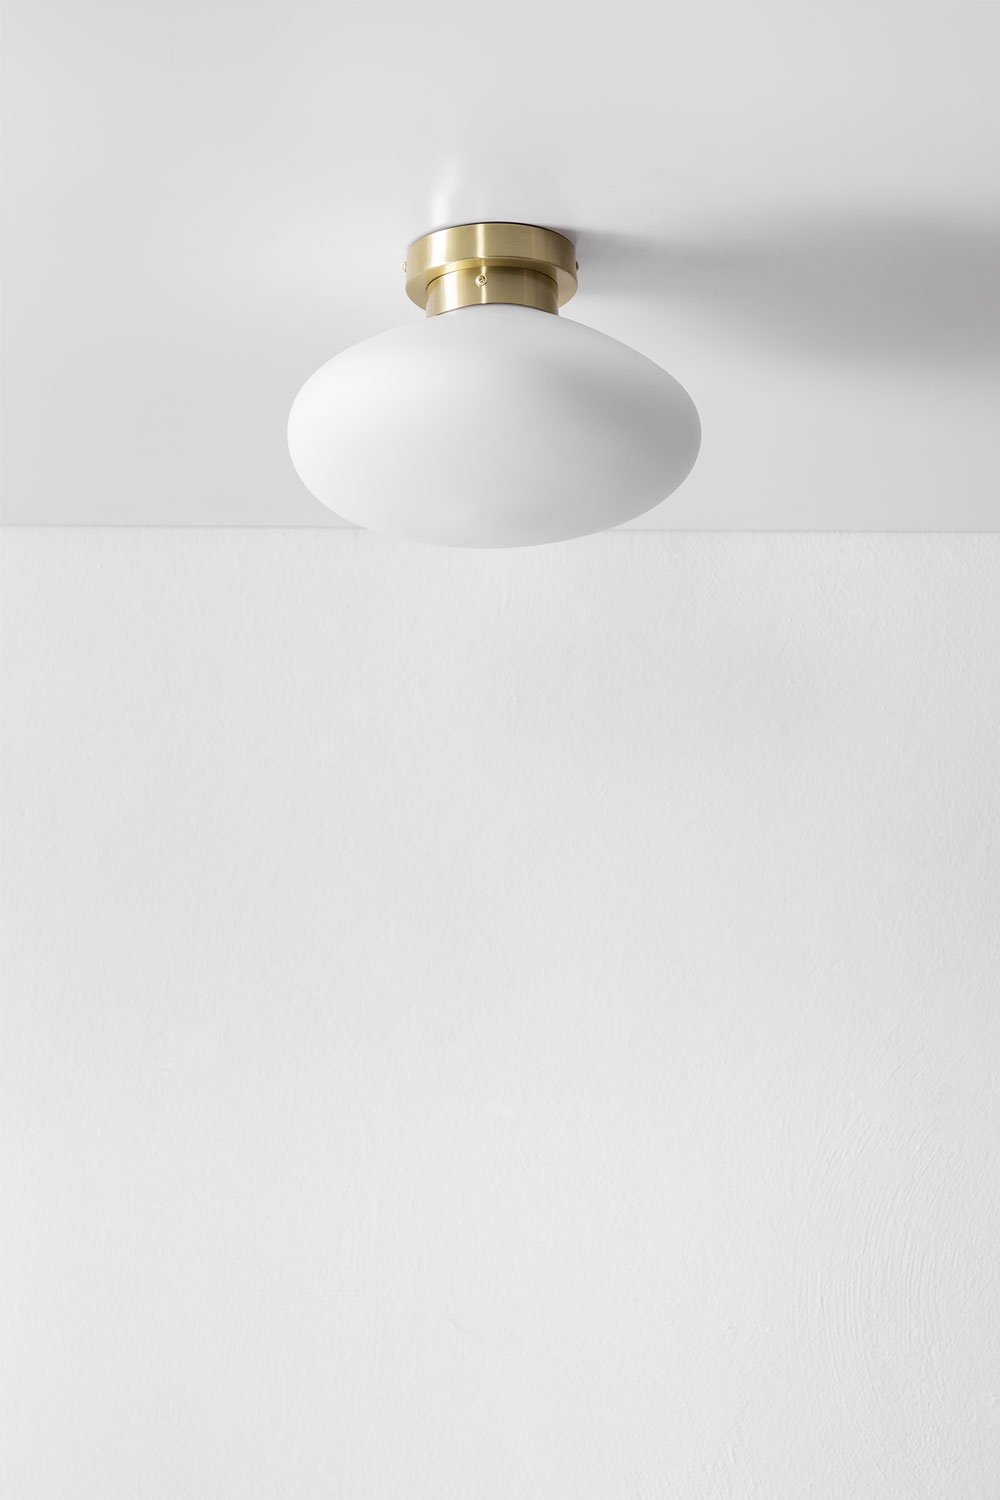 Diribe crystal ceiling lamp, gallery image 1